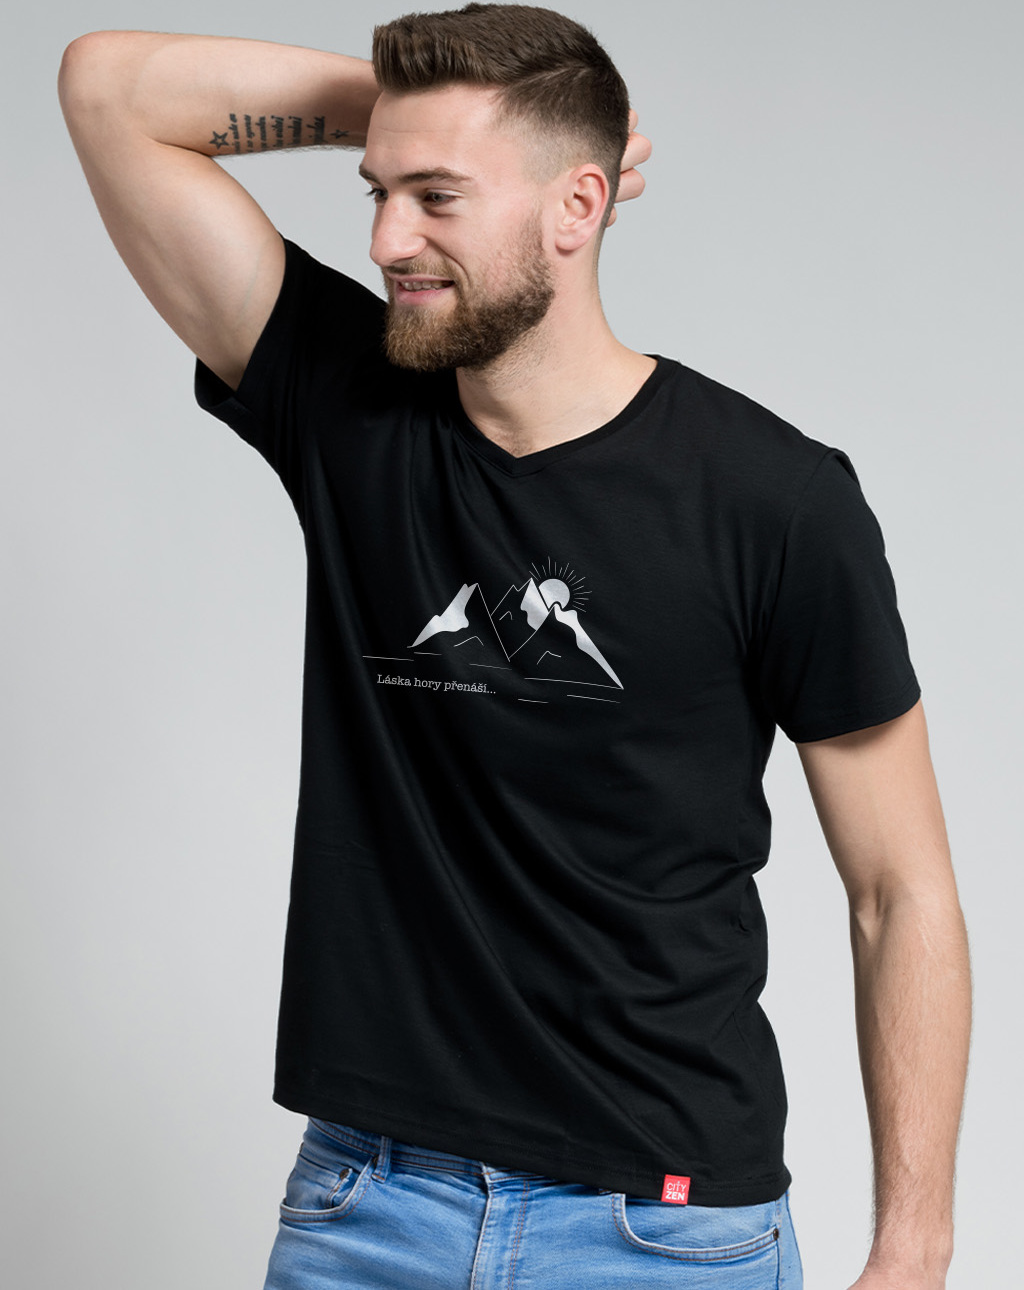 Pánské bavlněné tričko CITYZEN černé Láska hory přenáší Velikost: XL